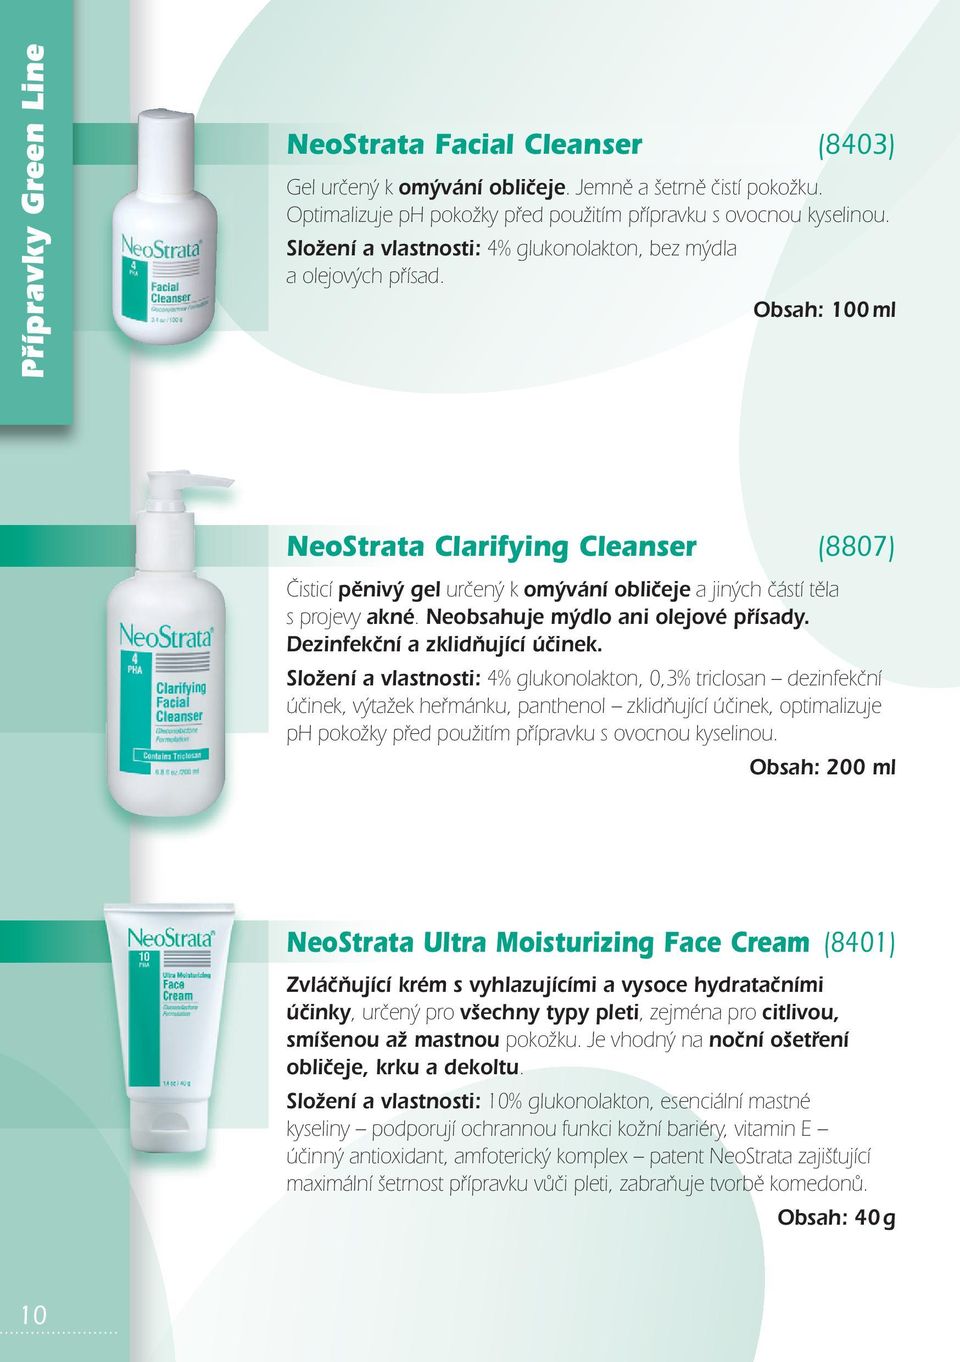 Obsah: 100 ml NeoStrata Clarifying Cleanser (8807) Čisticí pěnivý gel určený k omývání obličeje a jiných částí těla s projevy akné. Neobsahuje mýdlo ani olejové přísady.